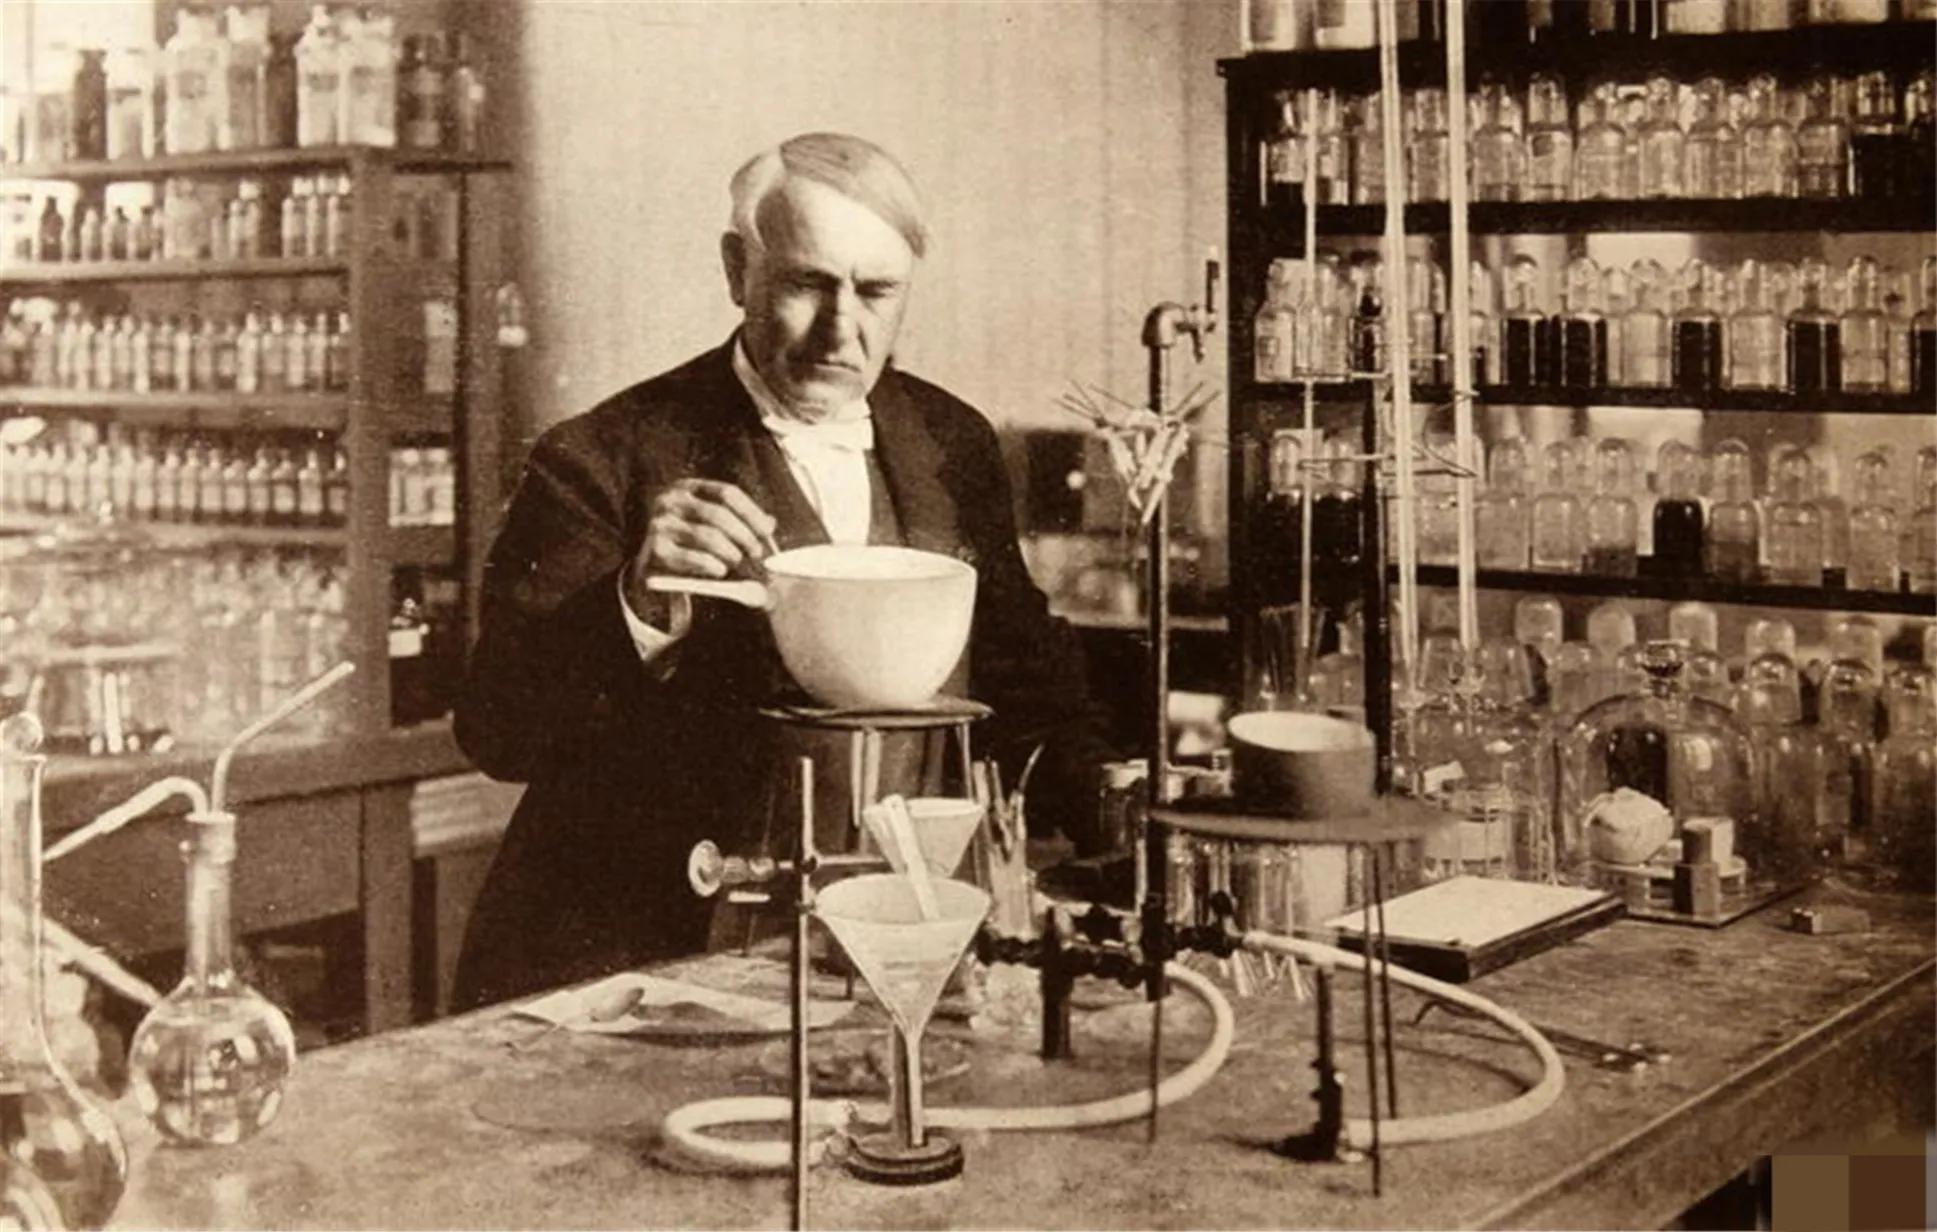 世界最伟大的发明家”托马斯·爱迪生（Thomas Edison）亲笔签名标准肖像照片】拍卖品_图片_价格_鉴赏_舆图照片_雅昌艺术品拍卖网